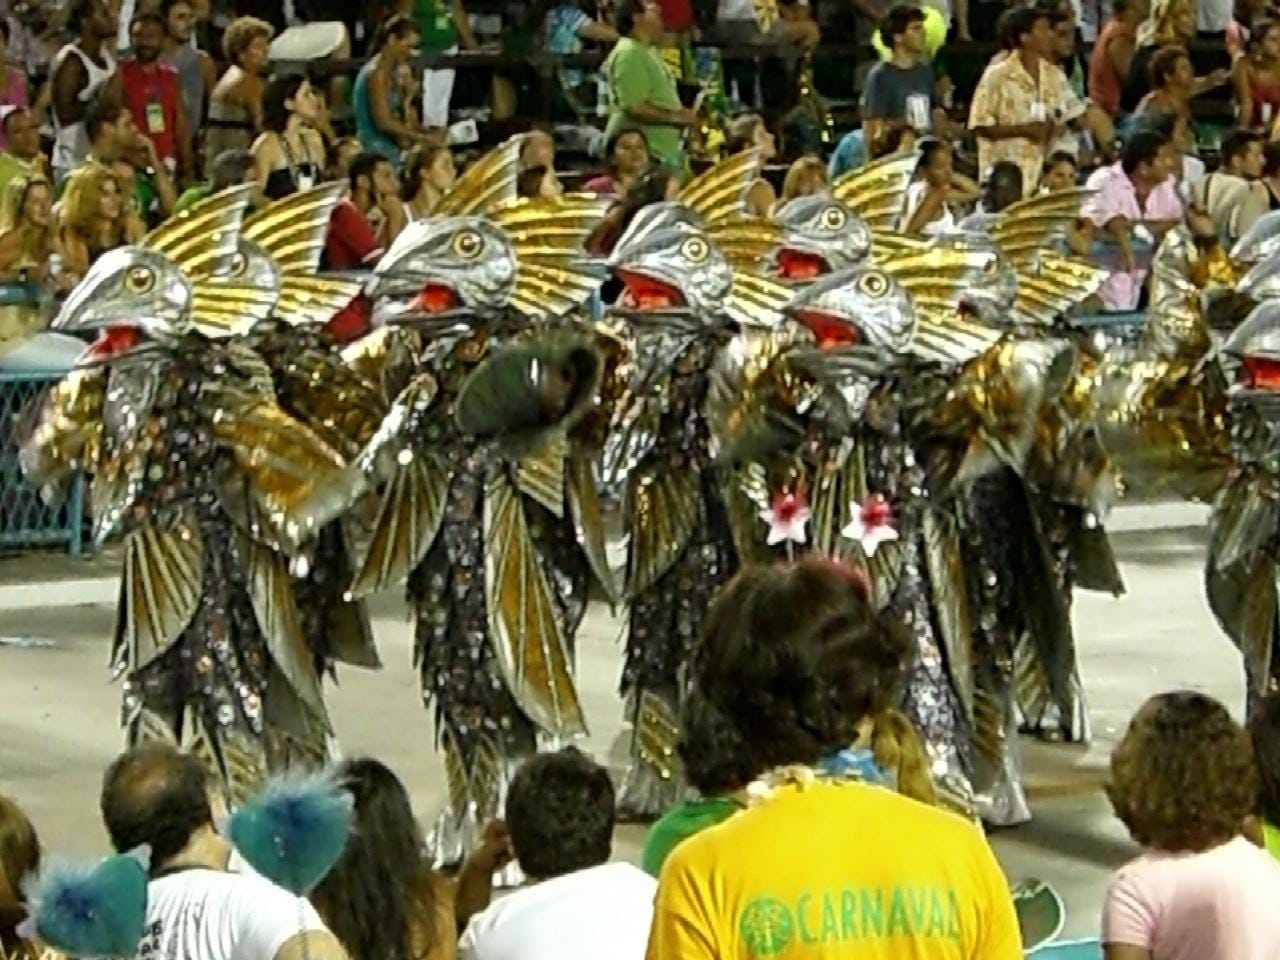 Samba school... of fish!